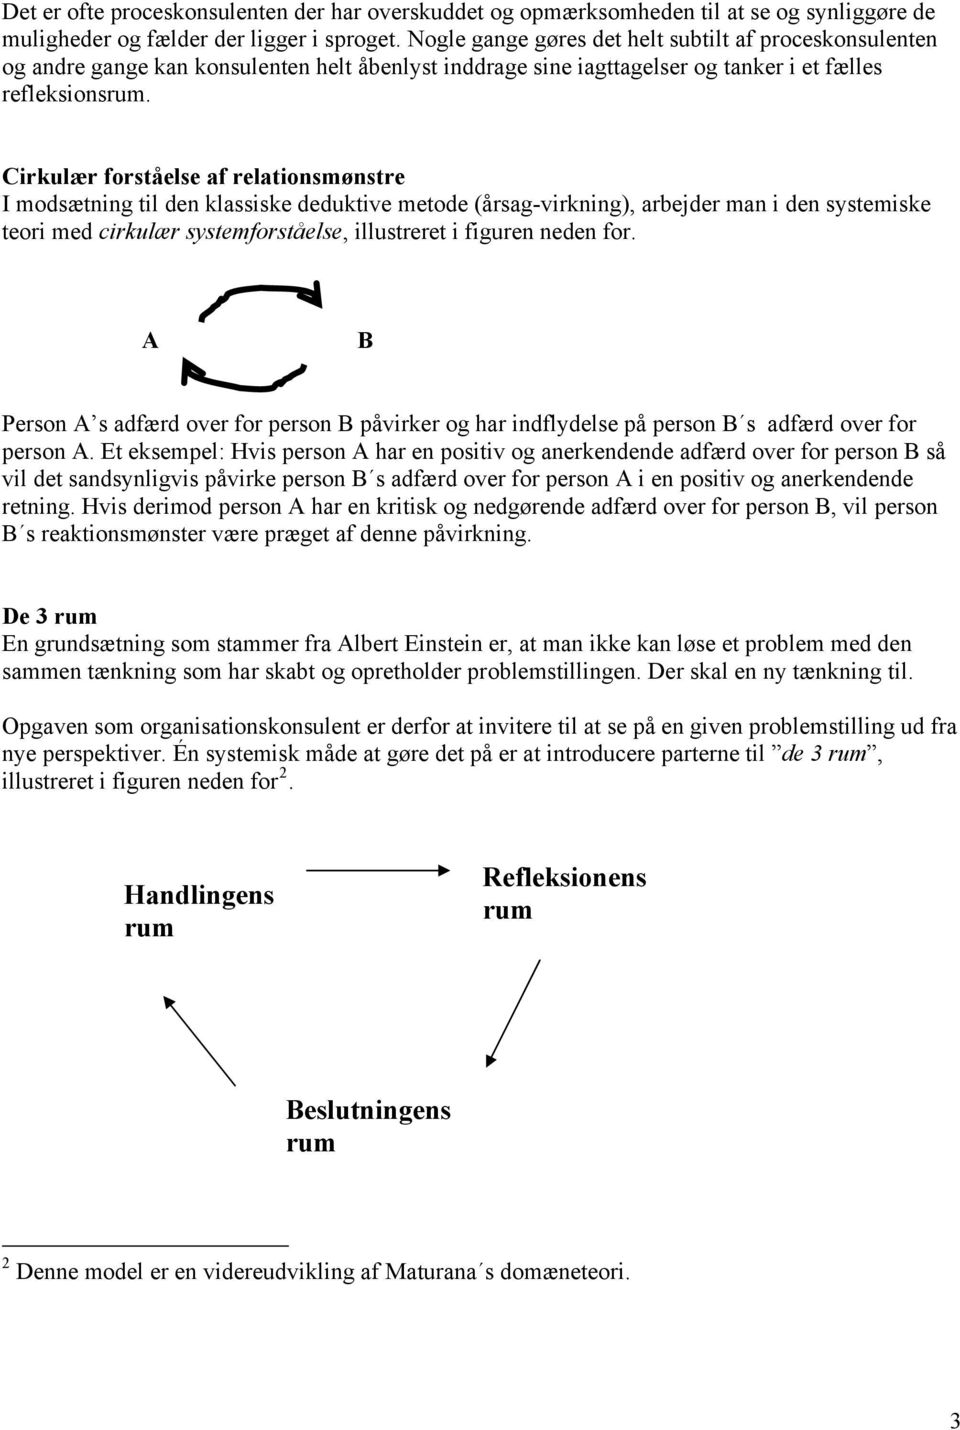 Cirkulær forståelse af relationsmønstre I modsætning til den klassiske deduktive metode (årsag-virkning), arbejder man i den systemiske teori med cirkulær systemforståelse, illustreret i figuren